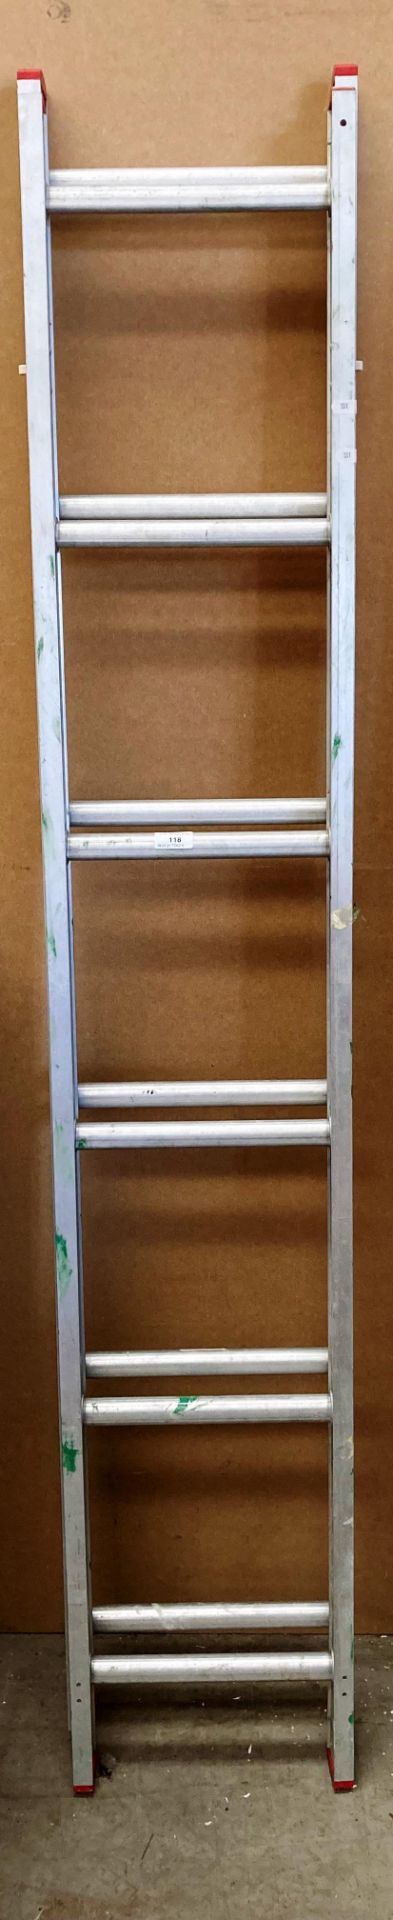 An aluminium 12 rung double extension ladder